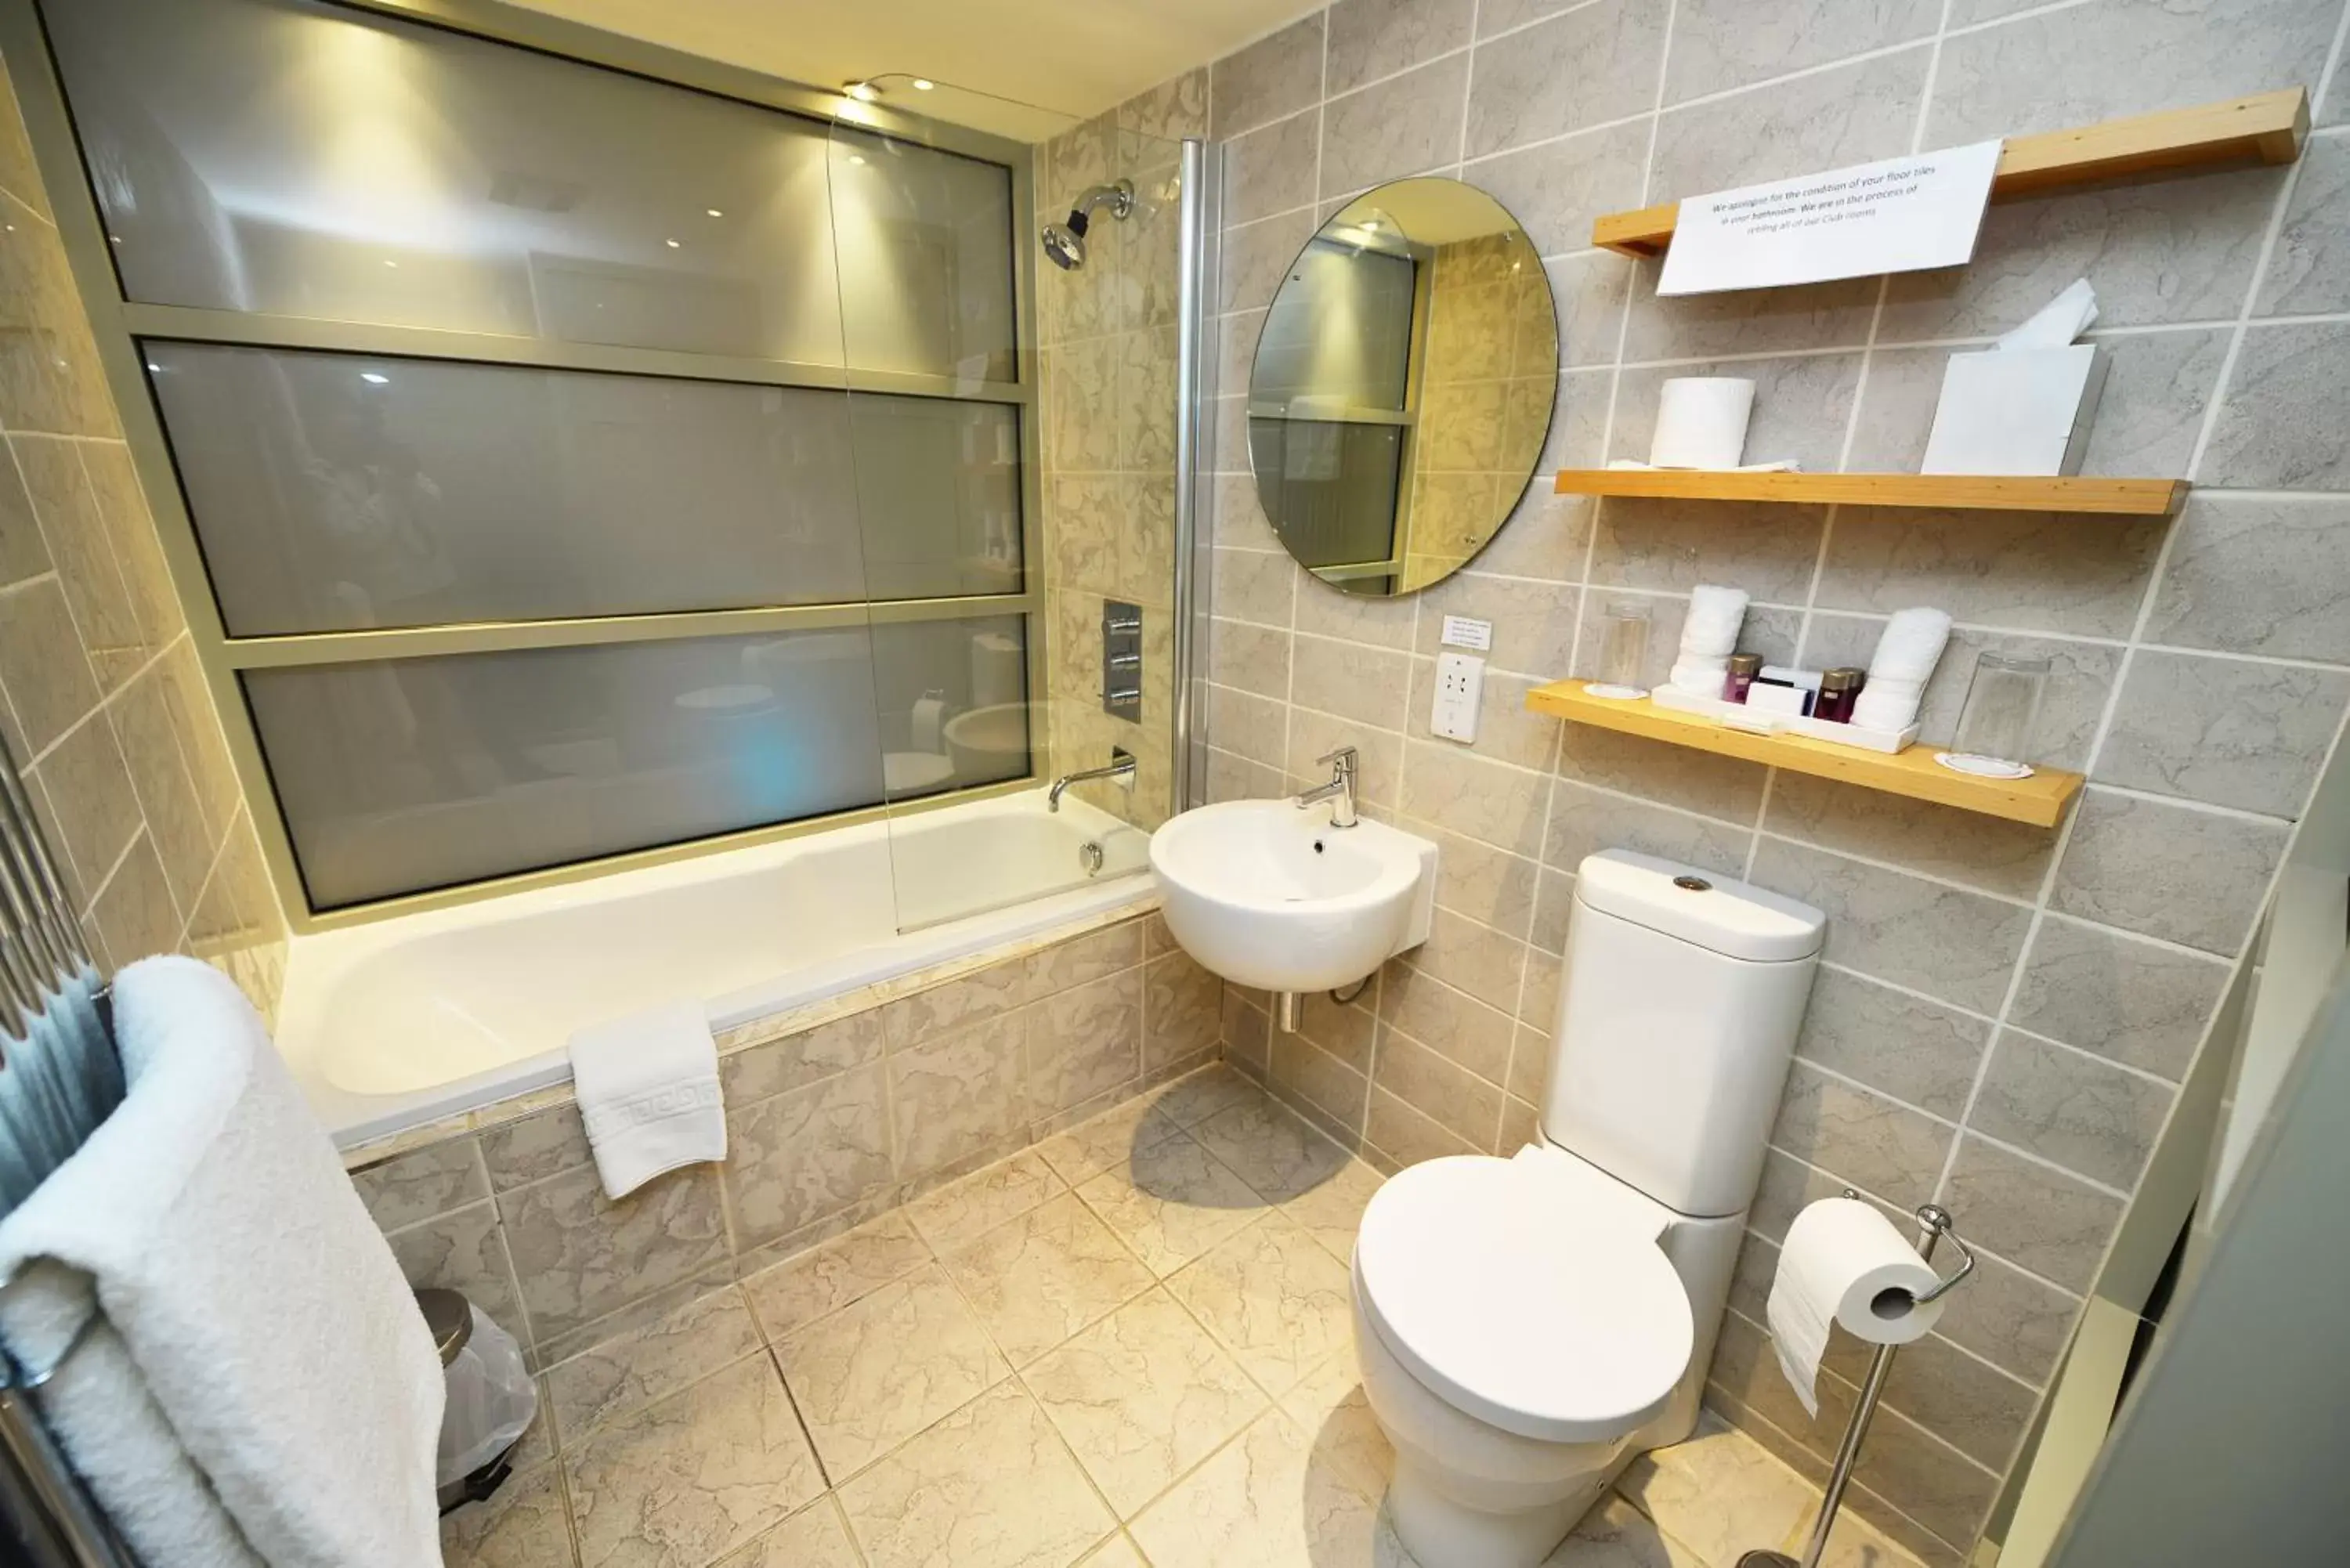 Toilet, Bathroom in Glynhill Hotel & Spa near Glasgow Airport